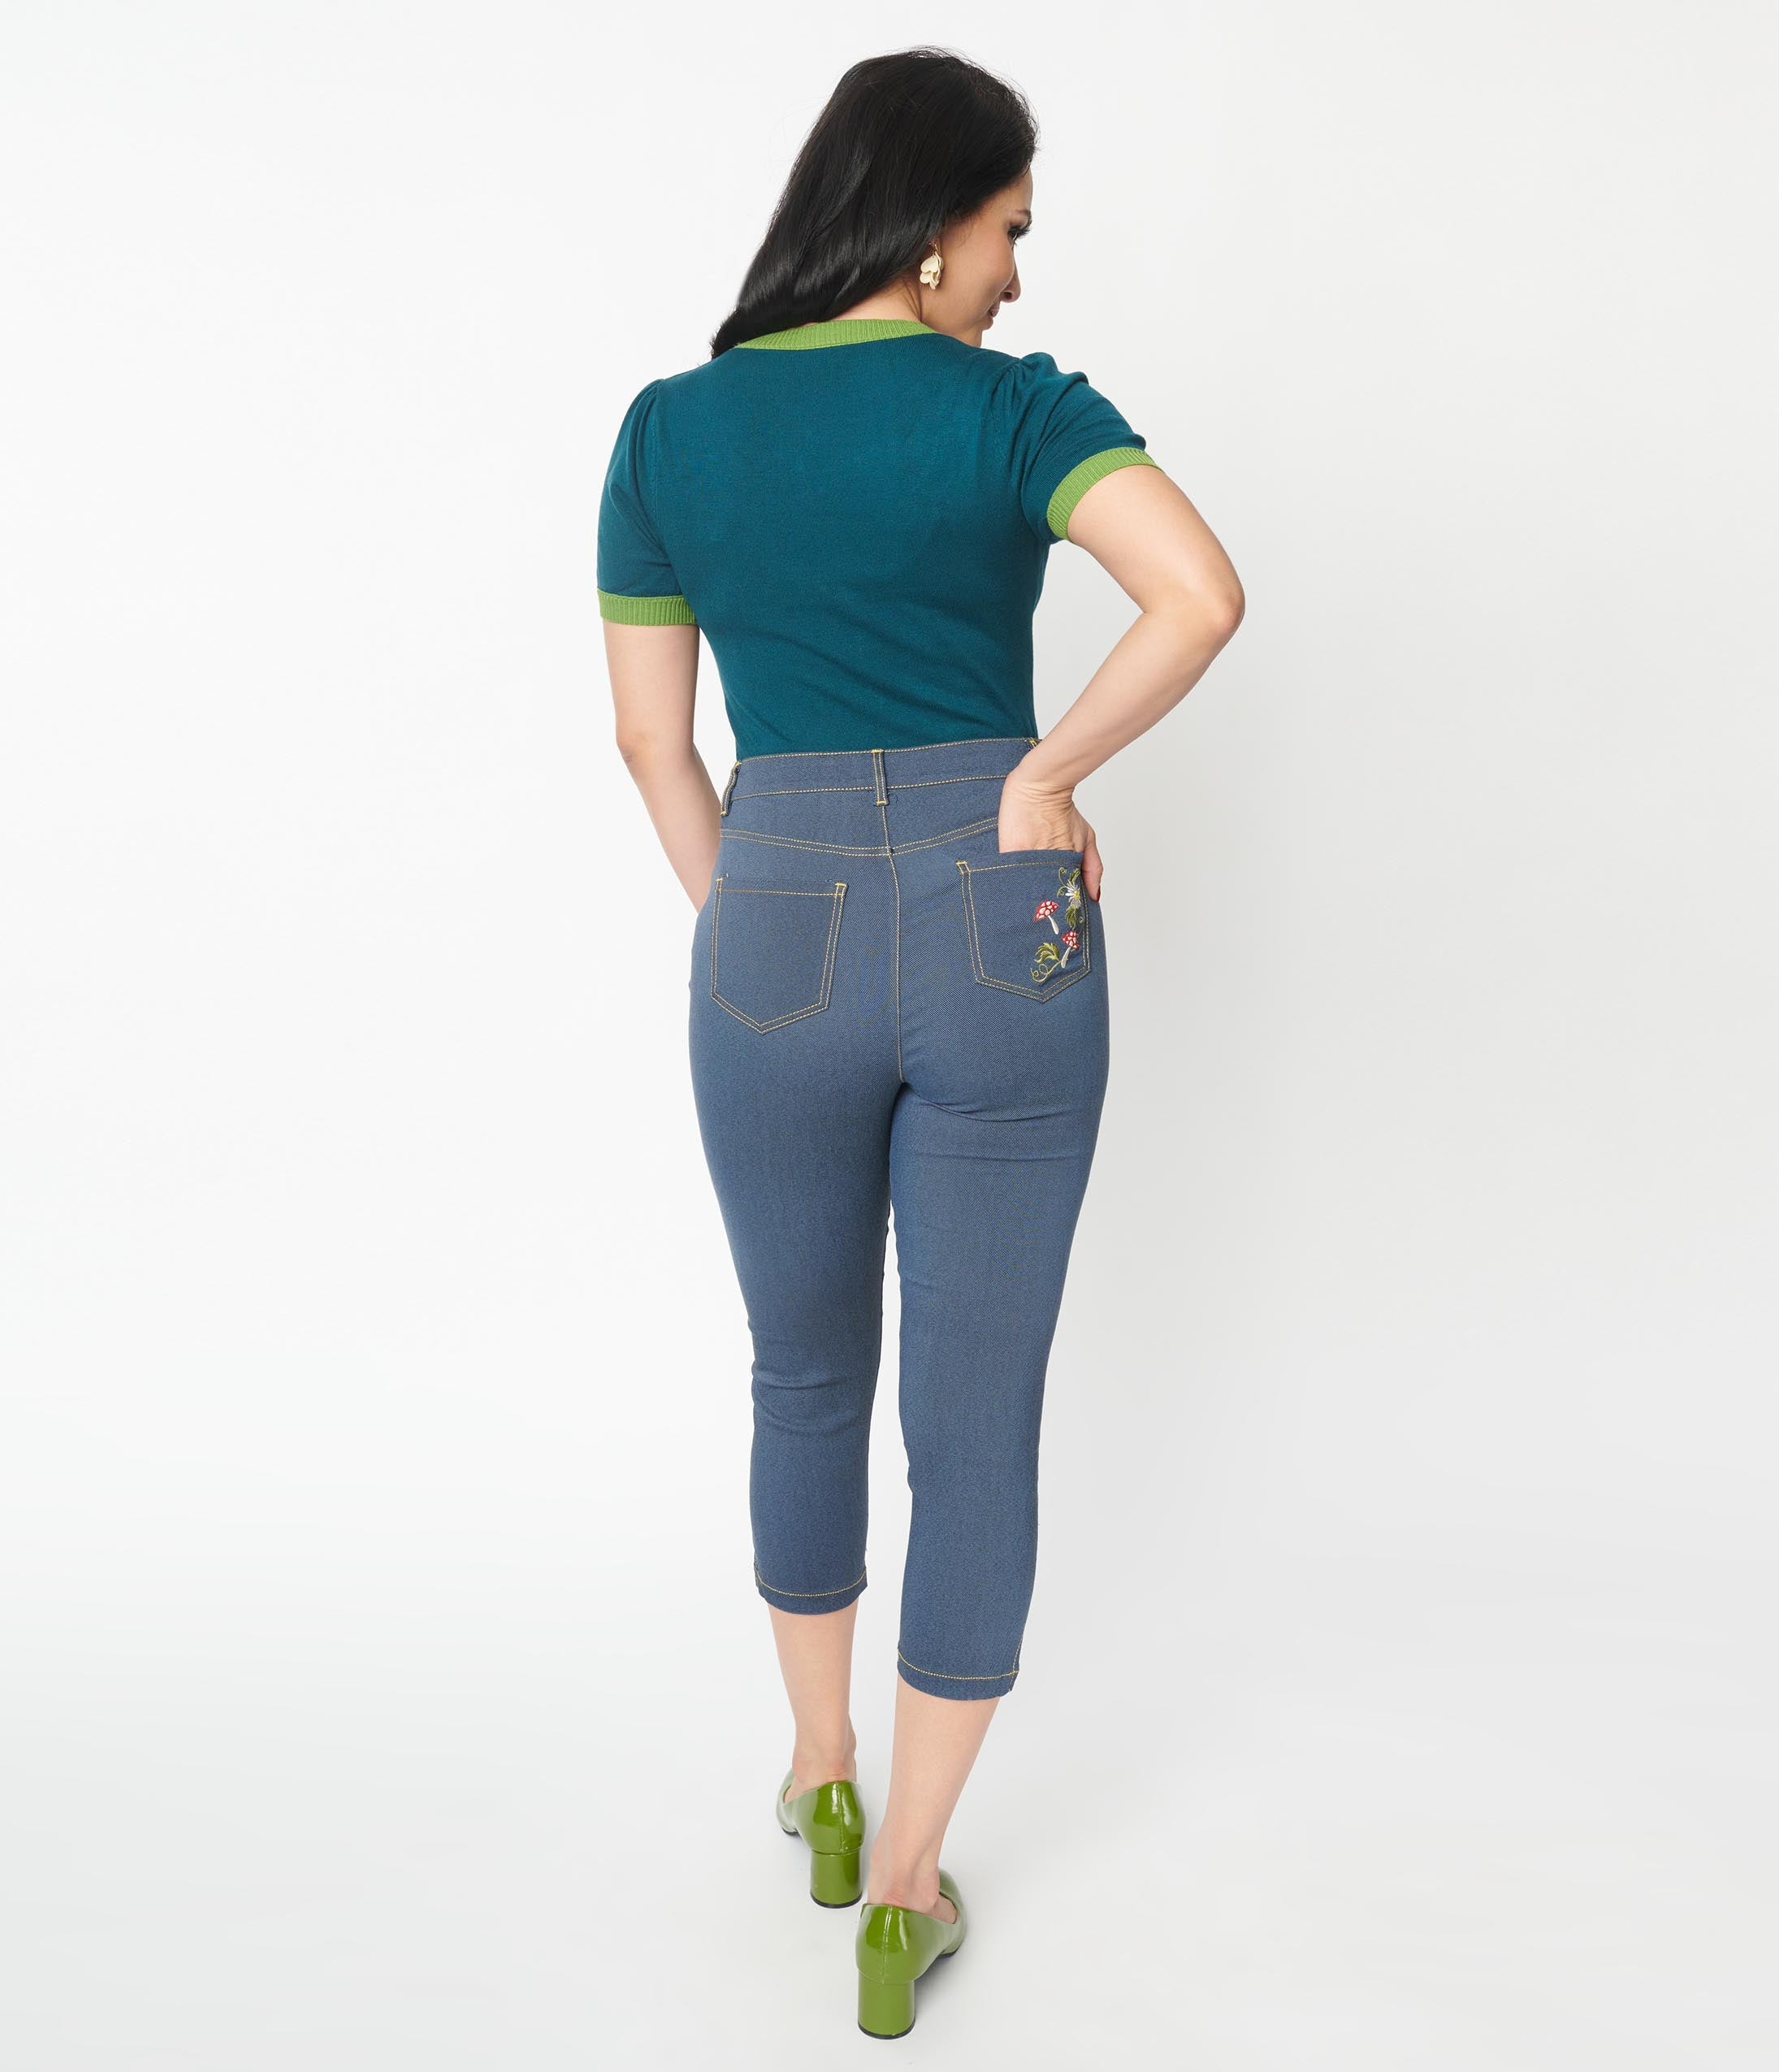 Capri Jeans - Buy Capri Jeans Online at Best Price | Myntra